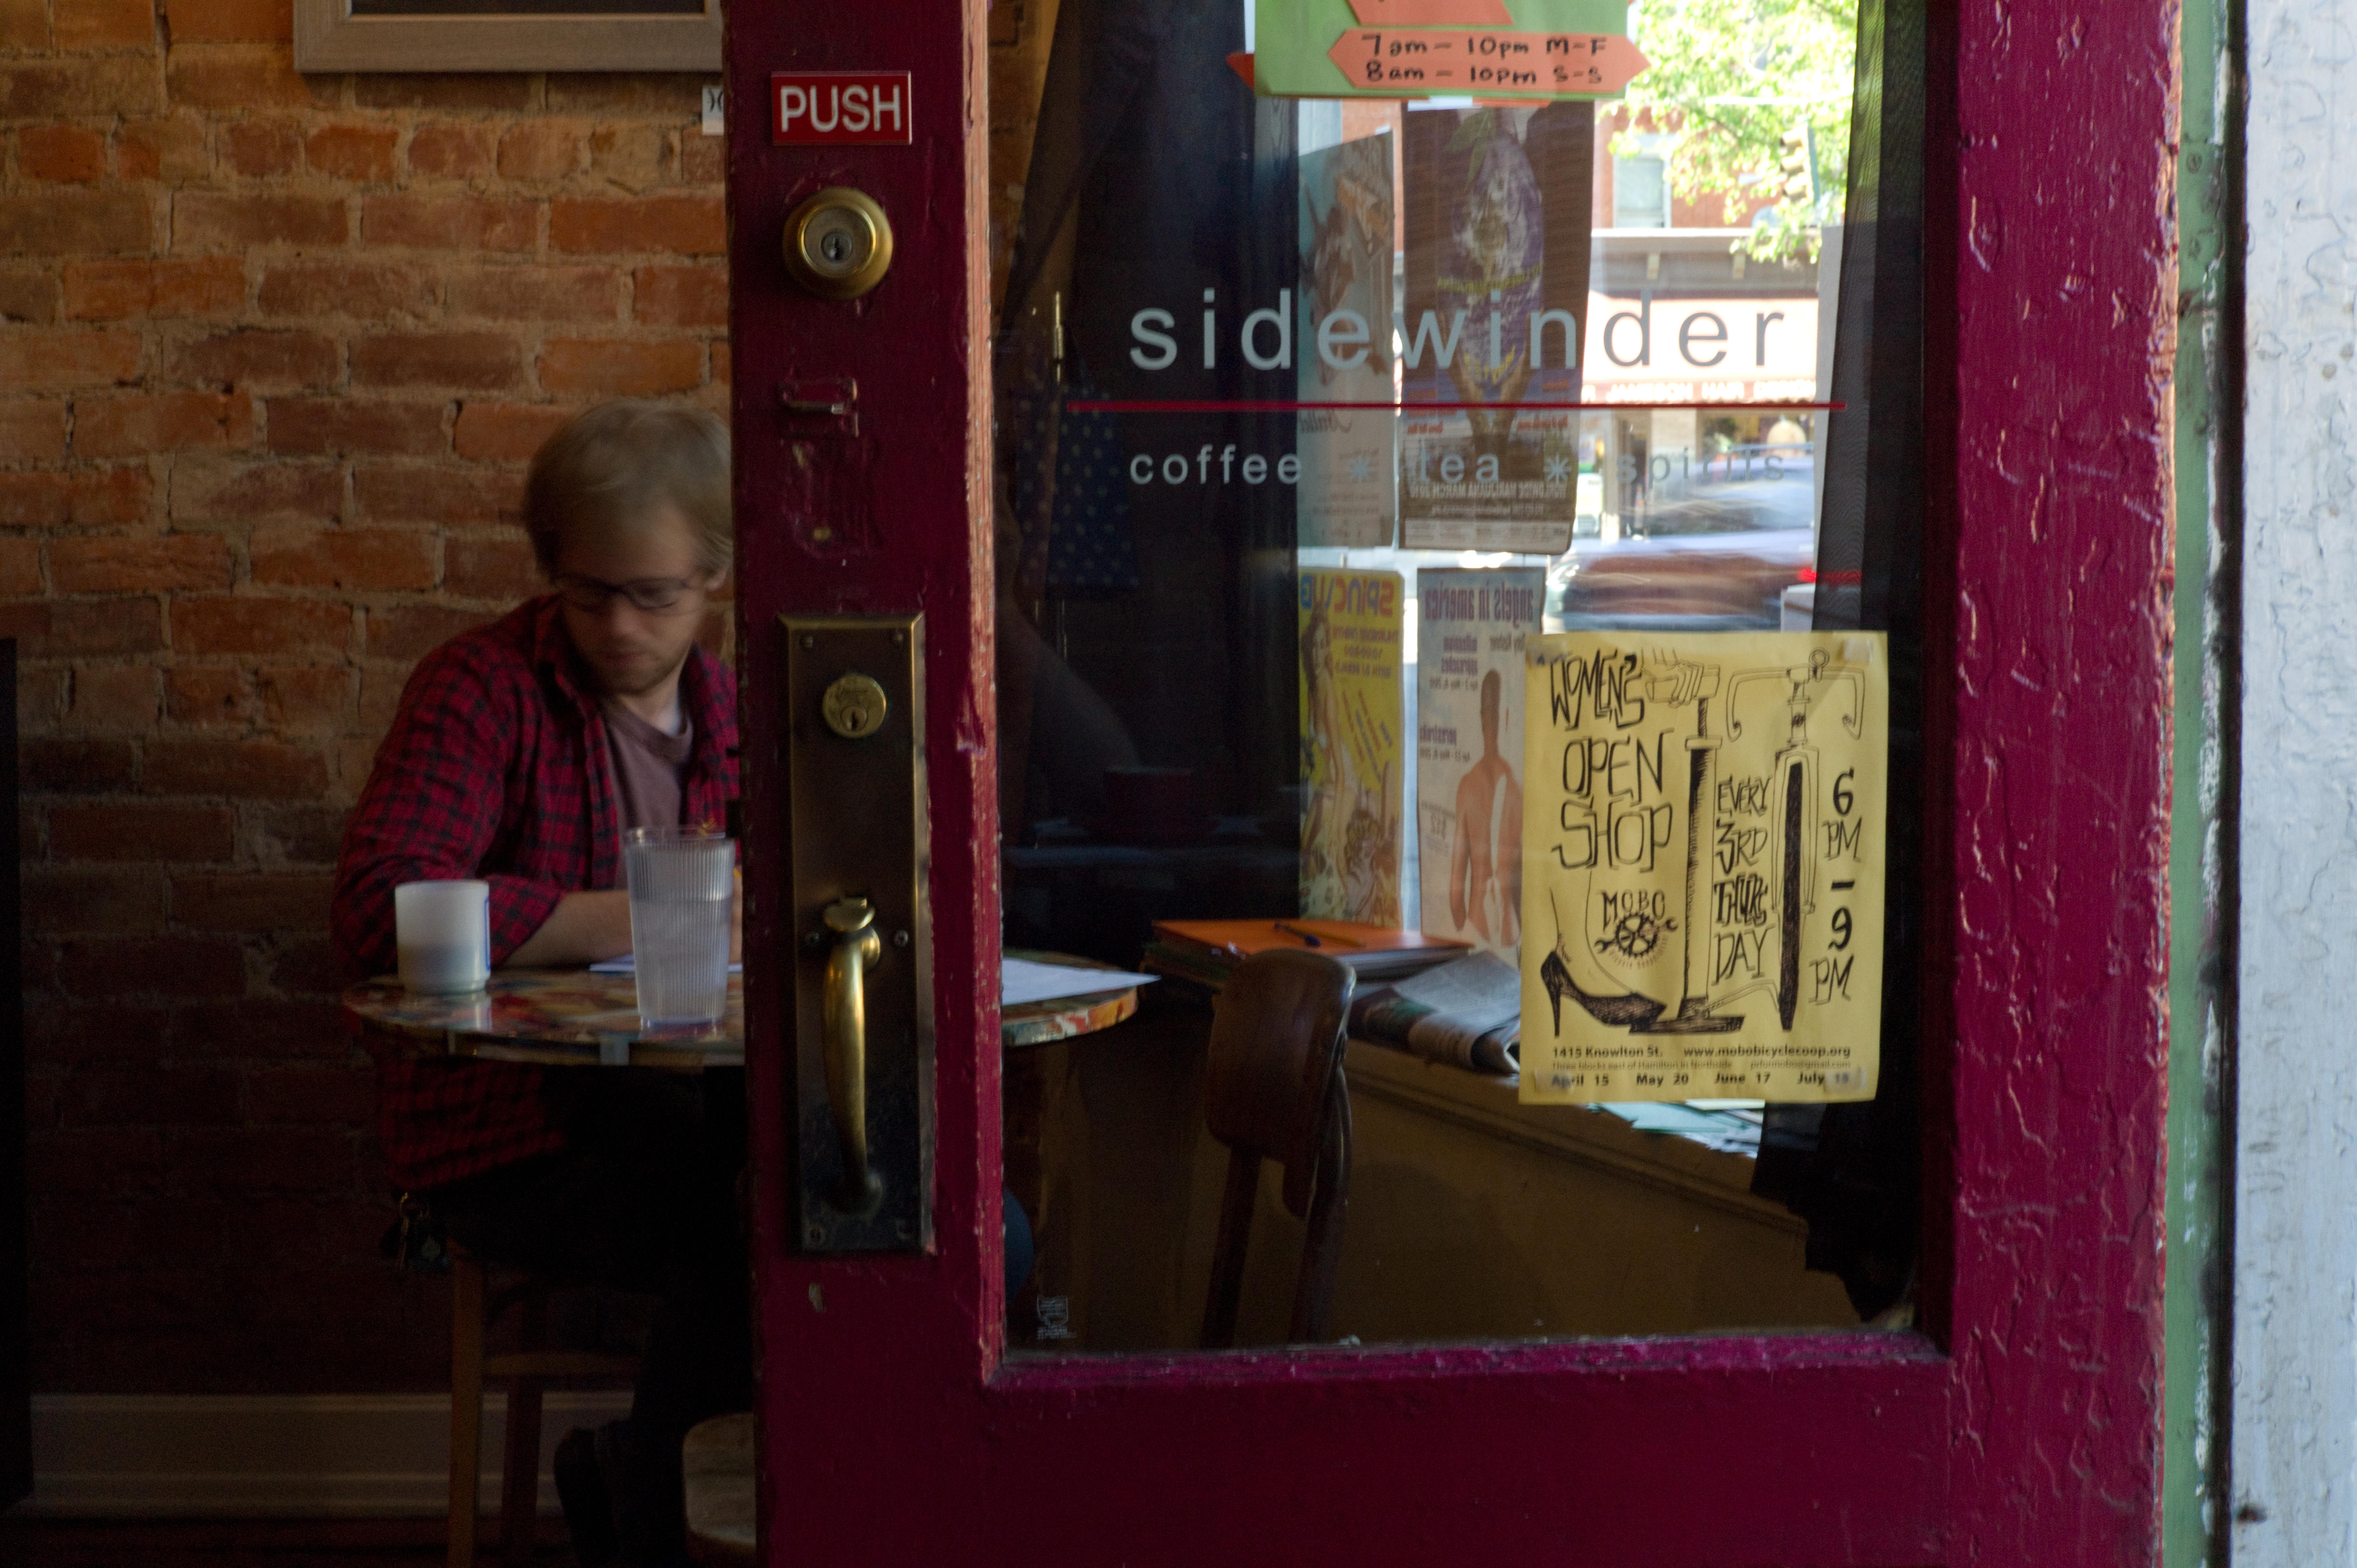 Sidewinder Cafe